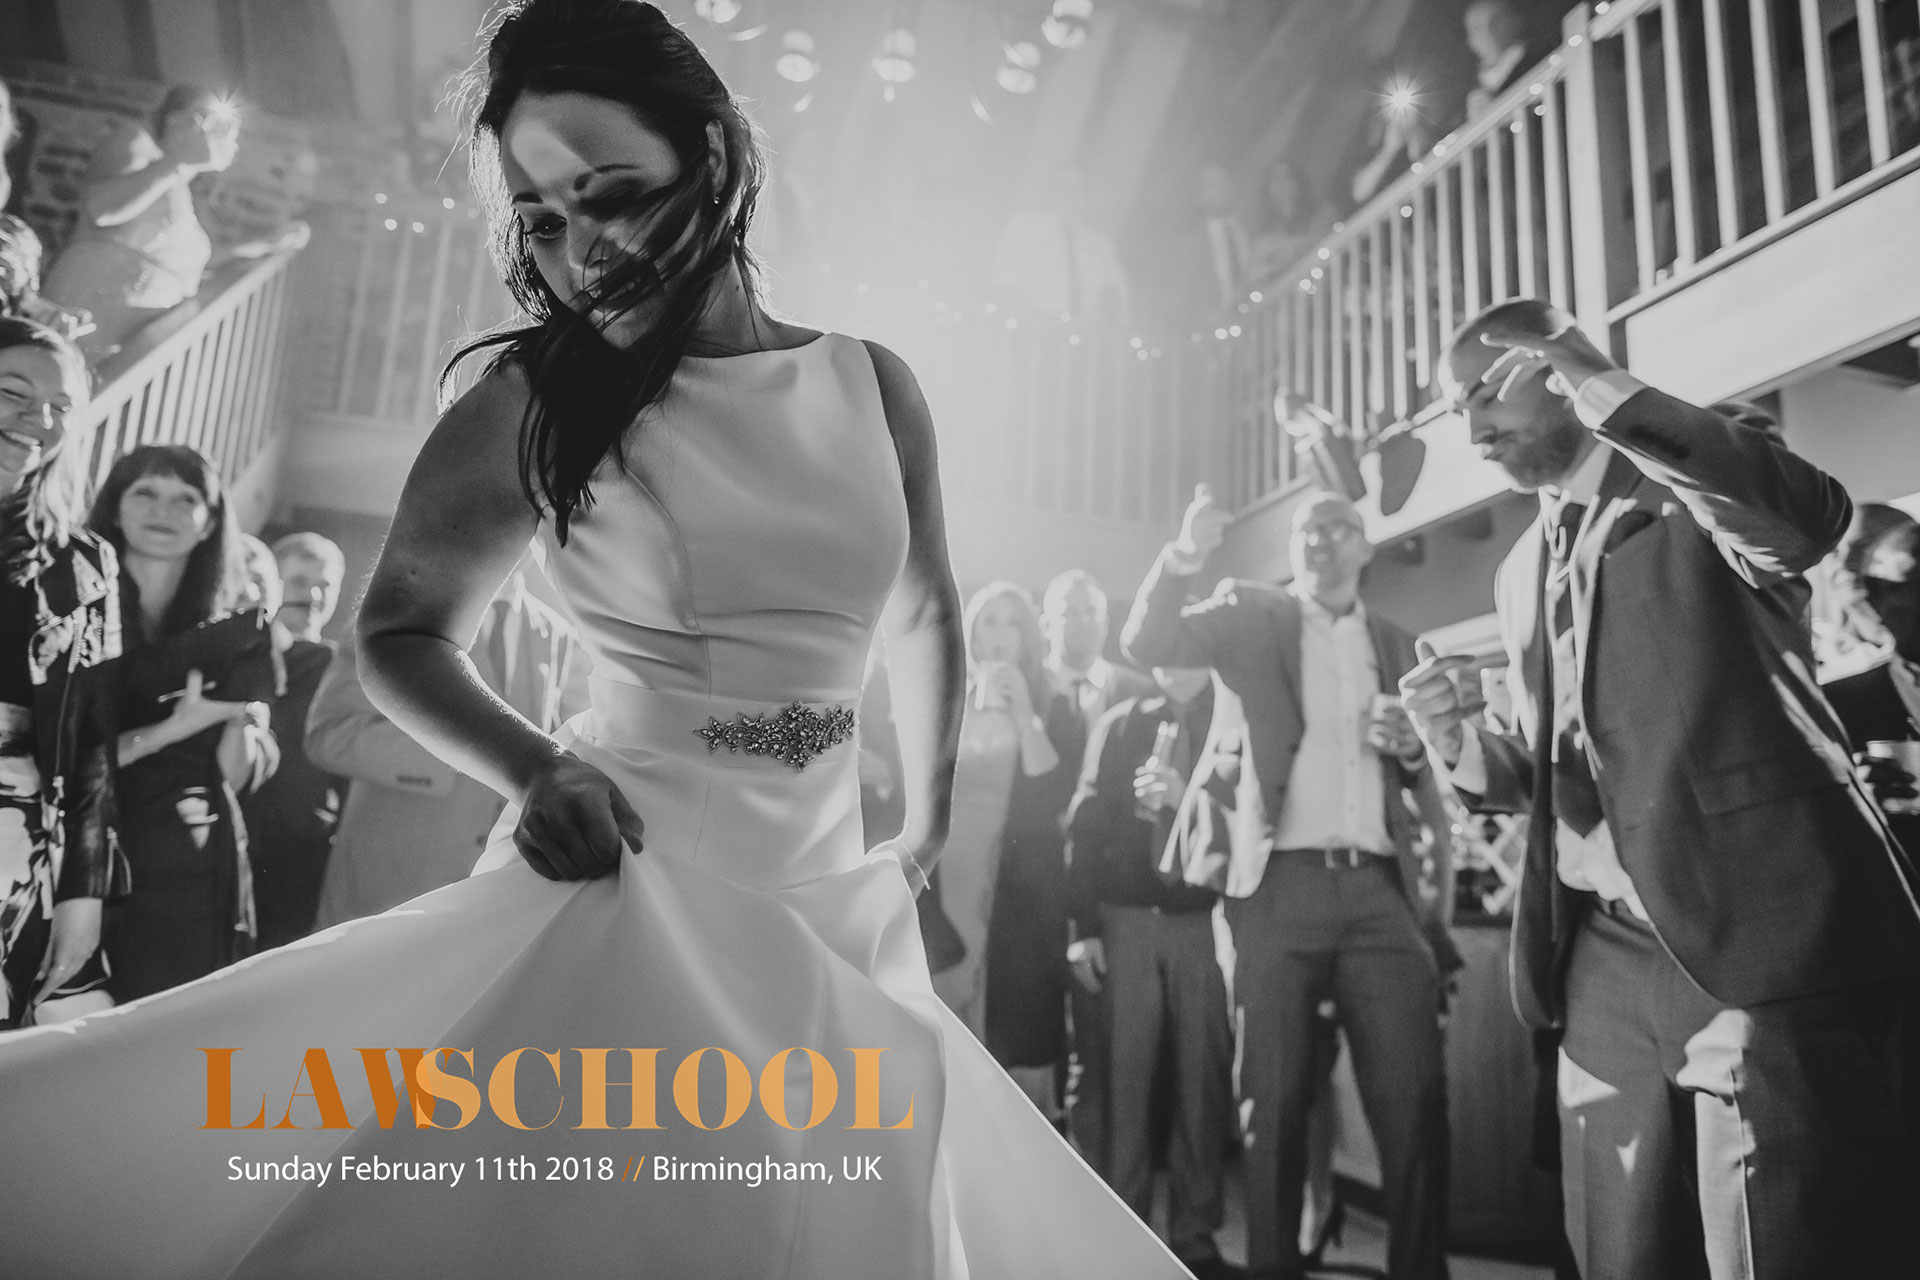 Law School / Wedding Photography Workshop / February 11th 2018 / Birmingham, UK